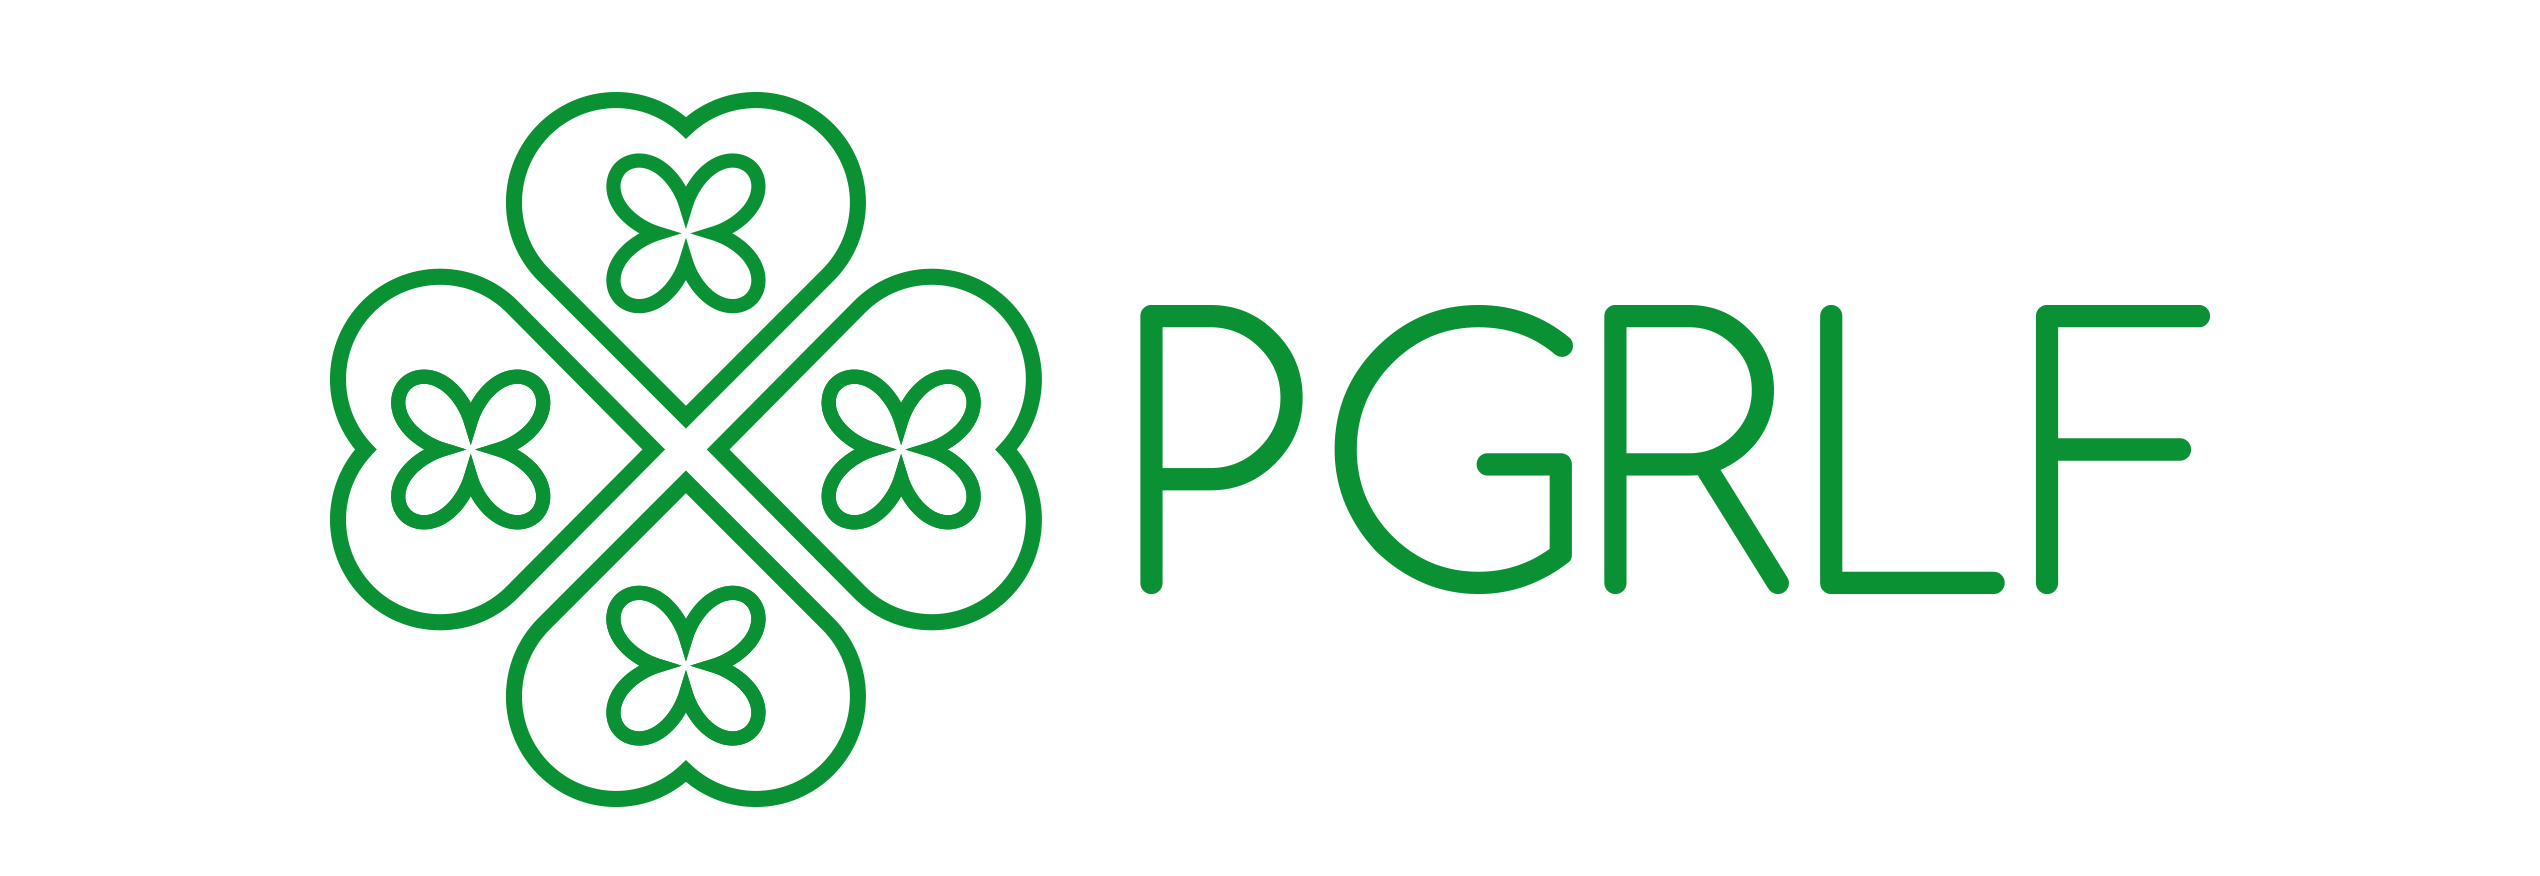 PGRLF logo n zel